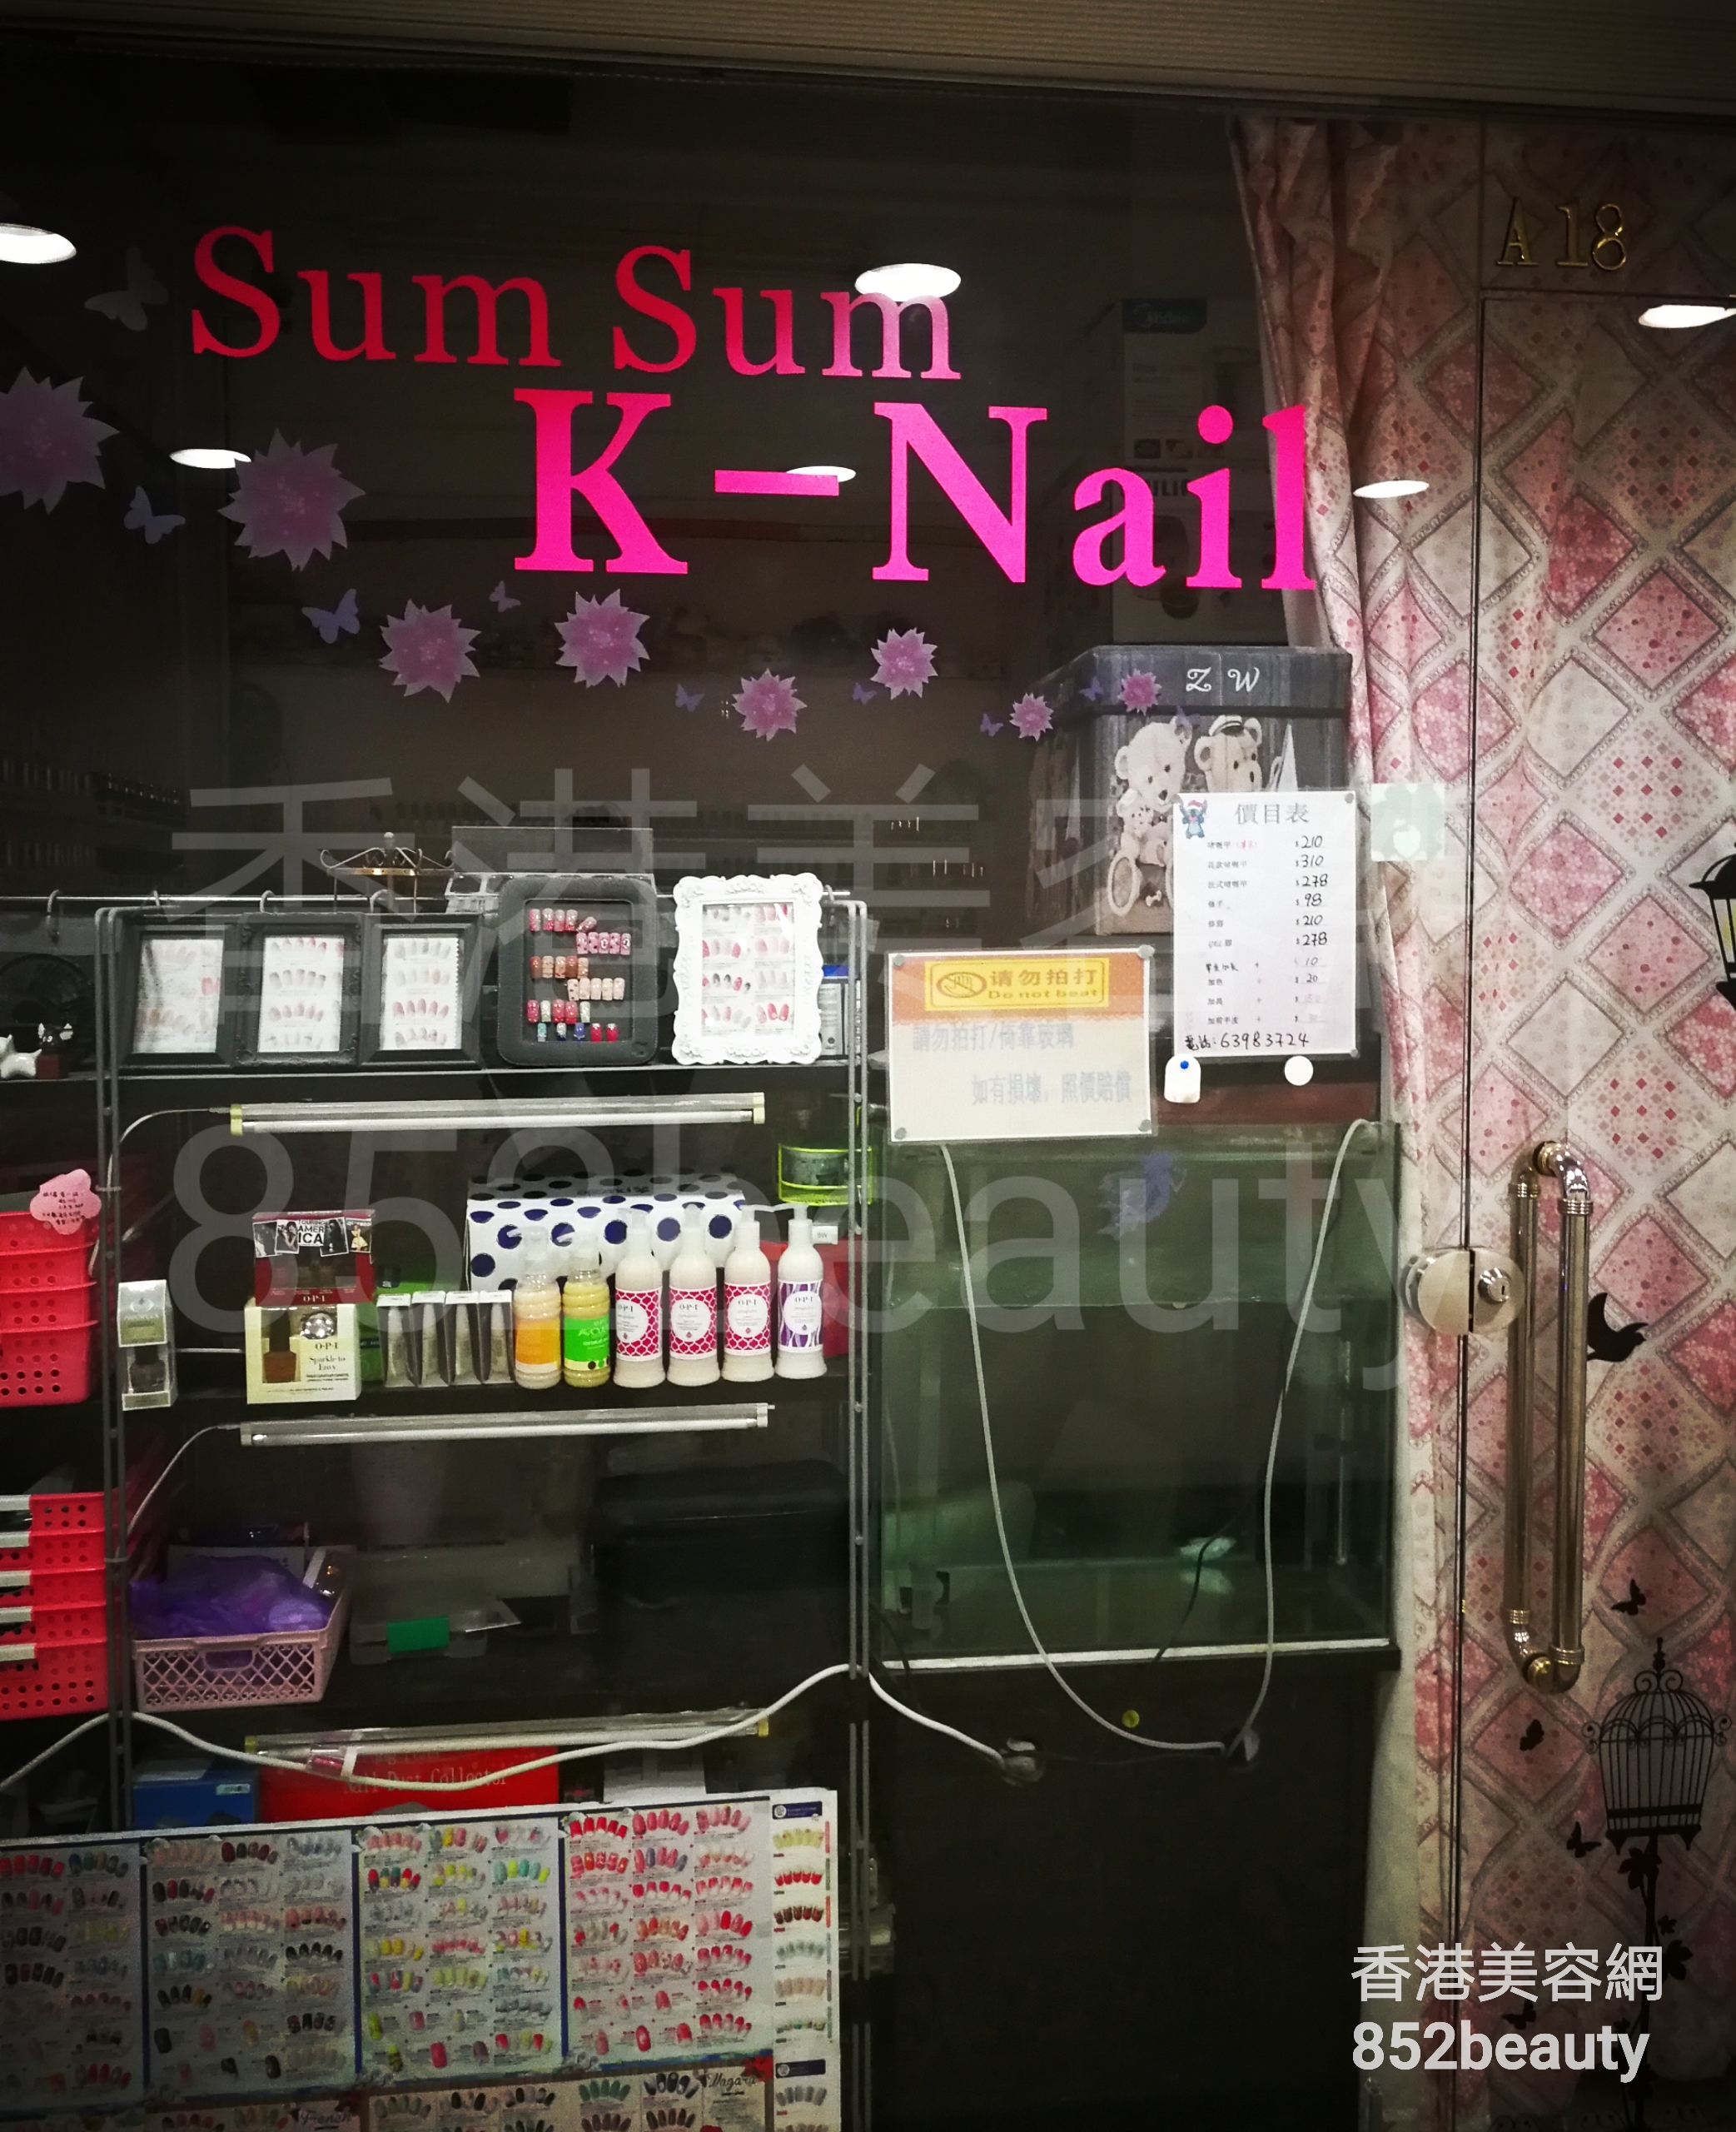 香港美容網 Hong Kong Beauty Salon 美容院 / 美容師: Sum Sum K-Nail